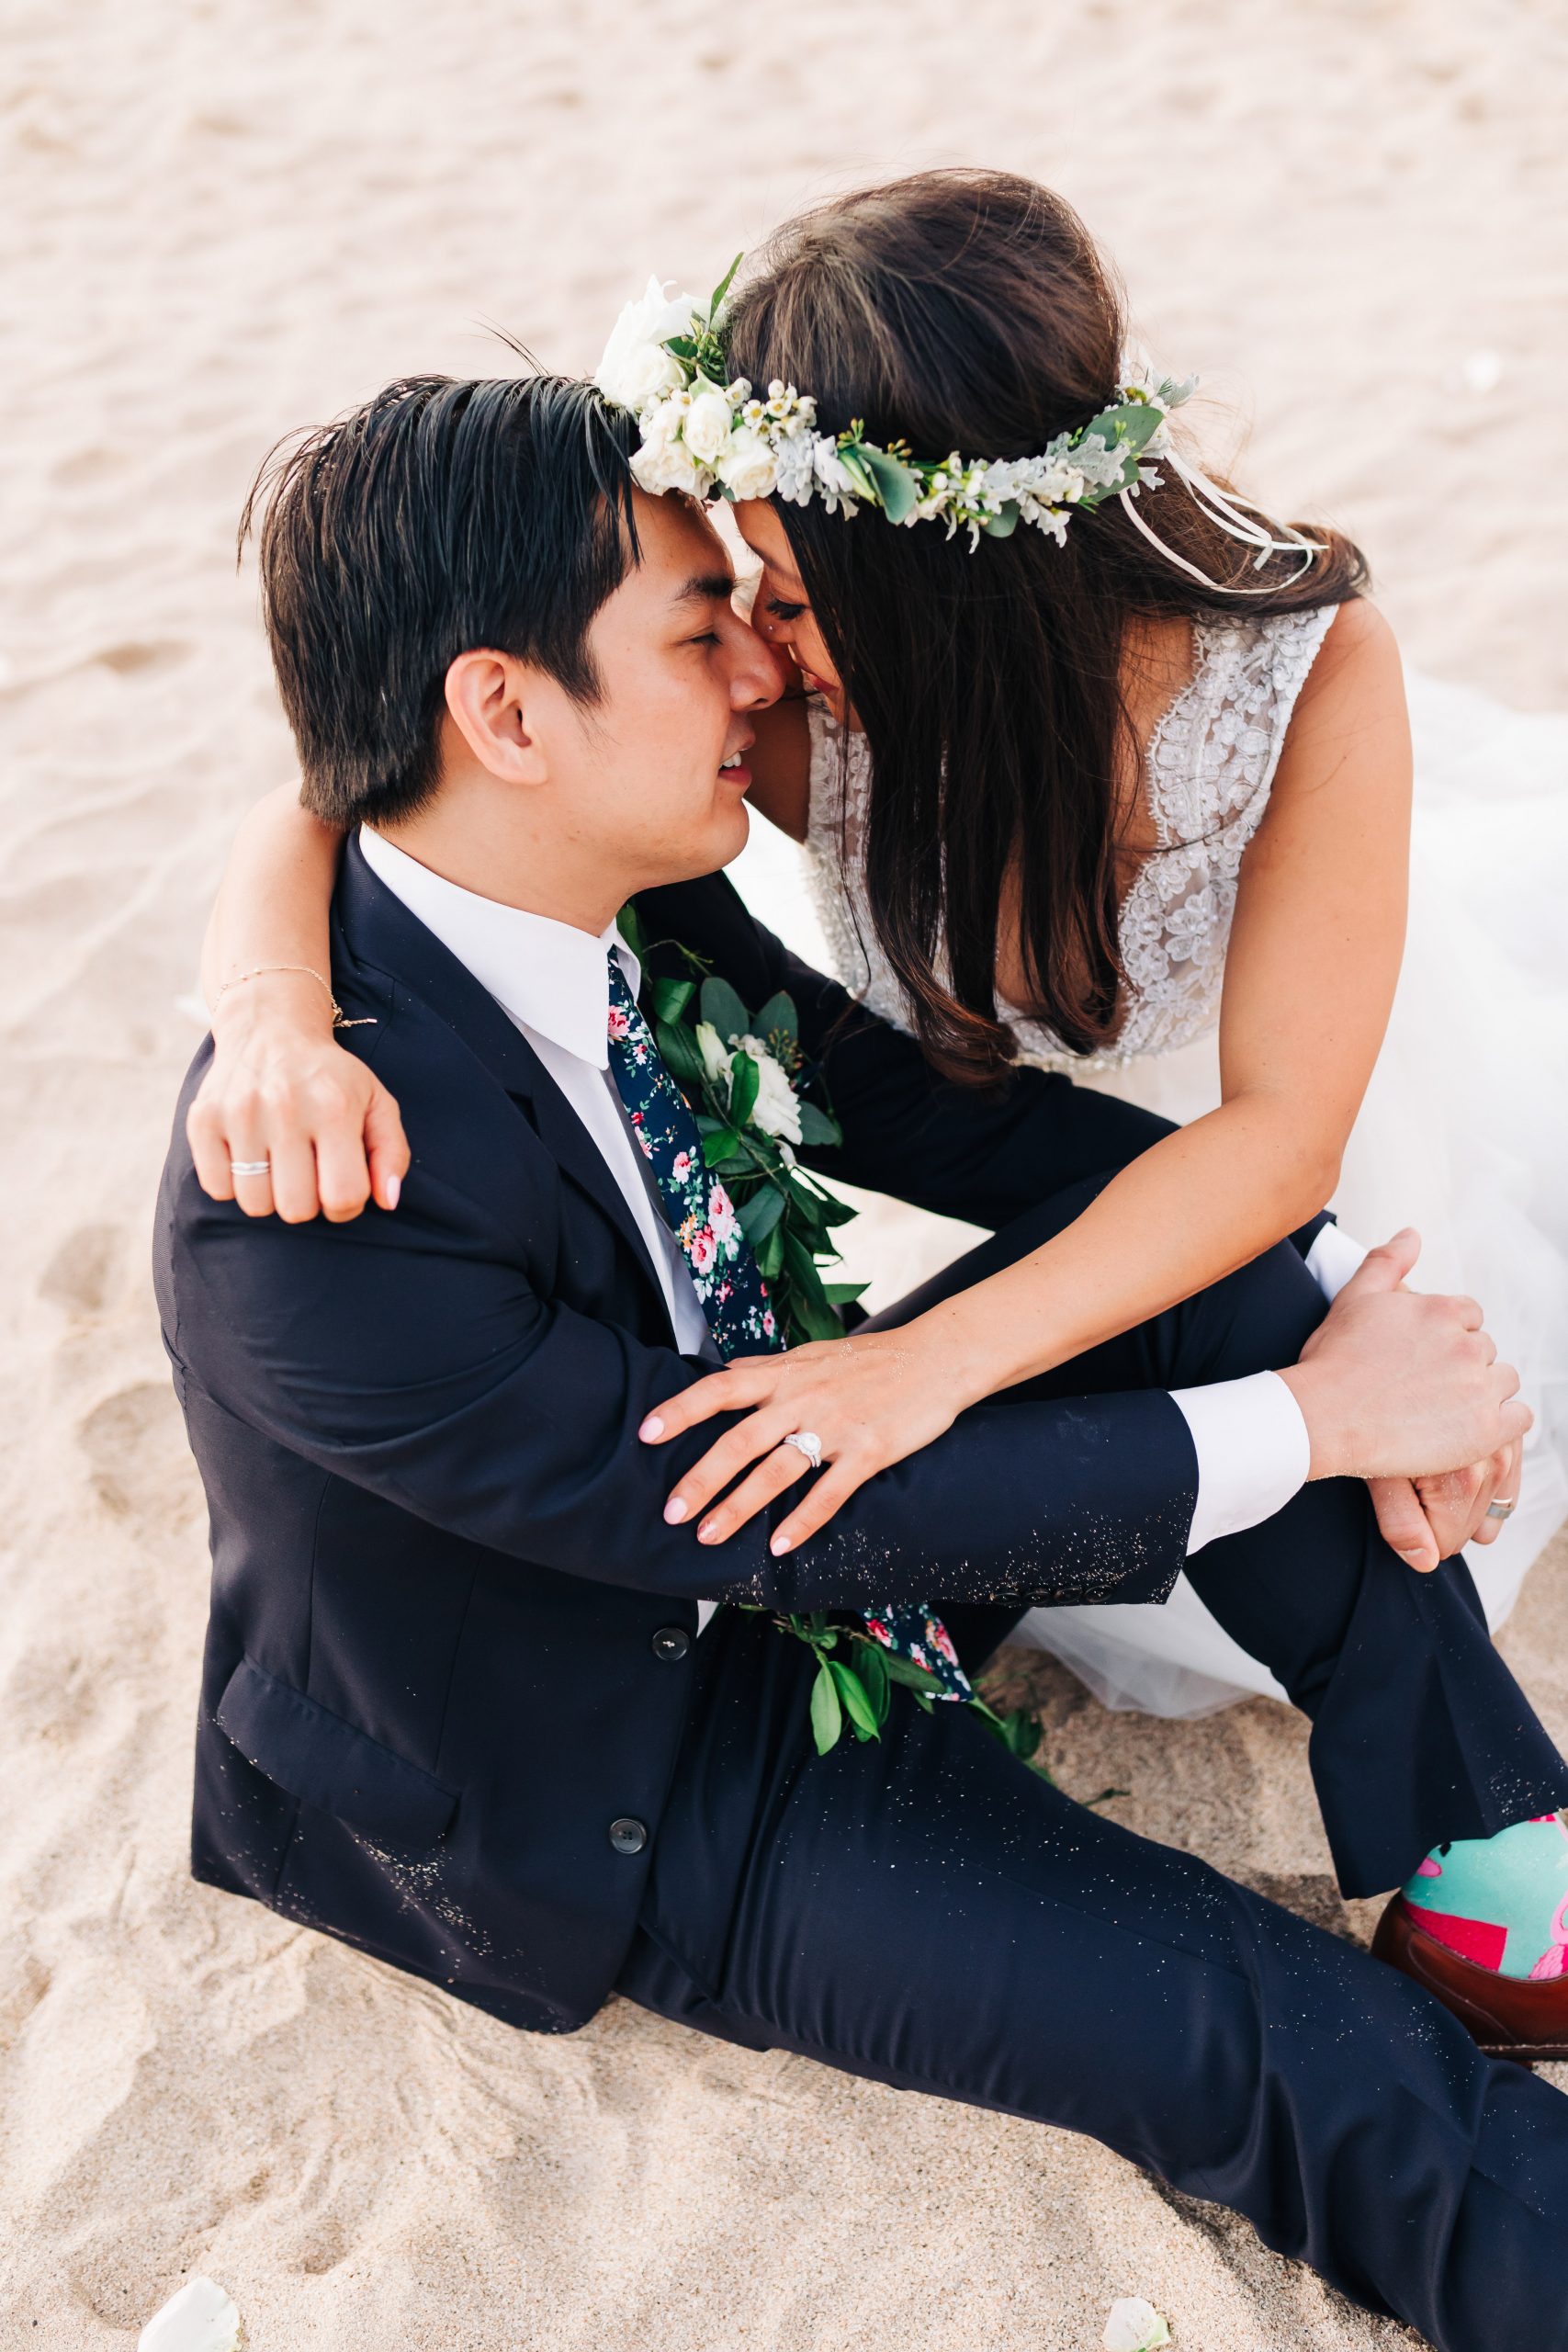 bride with flower crown hugging groom sitting in sand at beach wedding in Hawaii